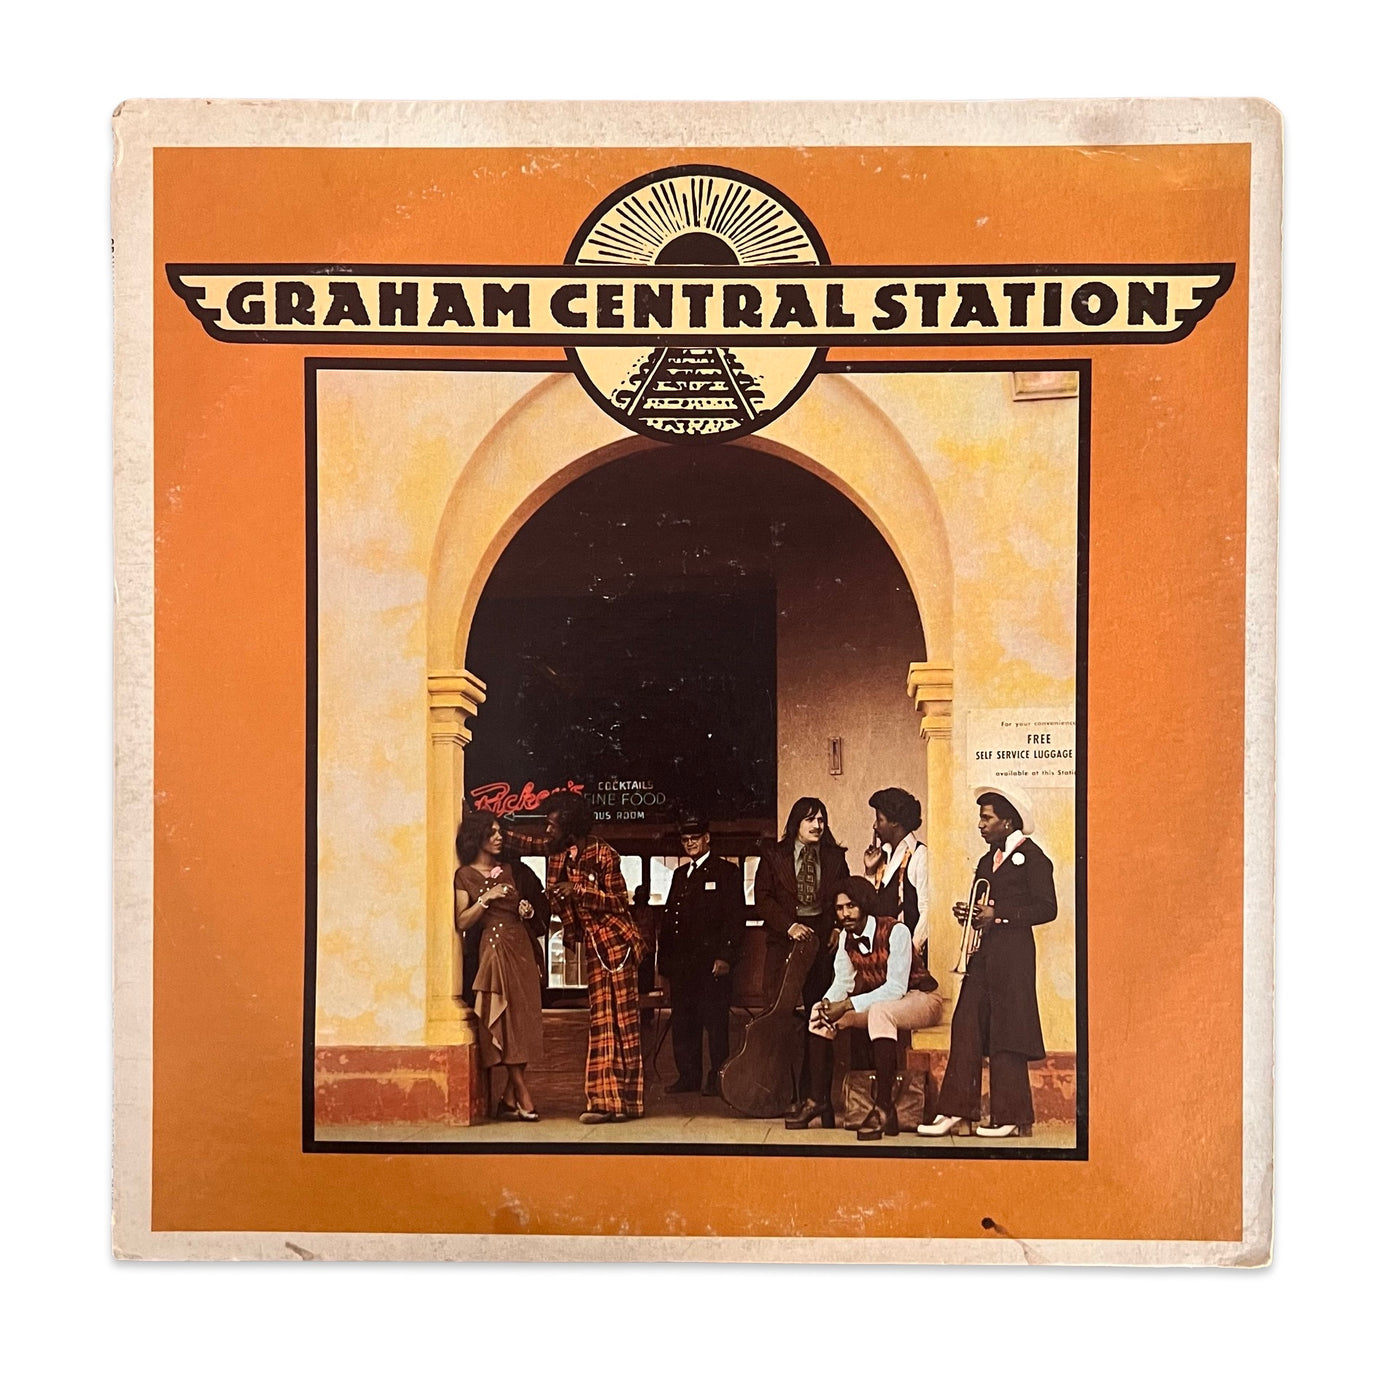 Graham Central Station – Graham Central Station